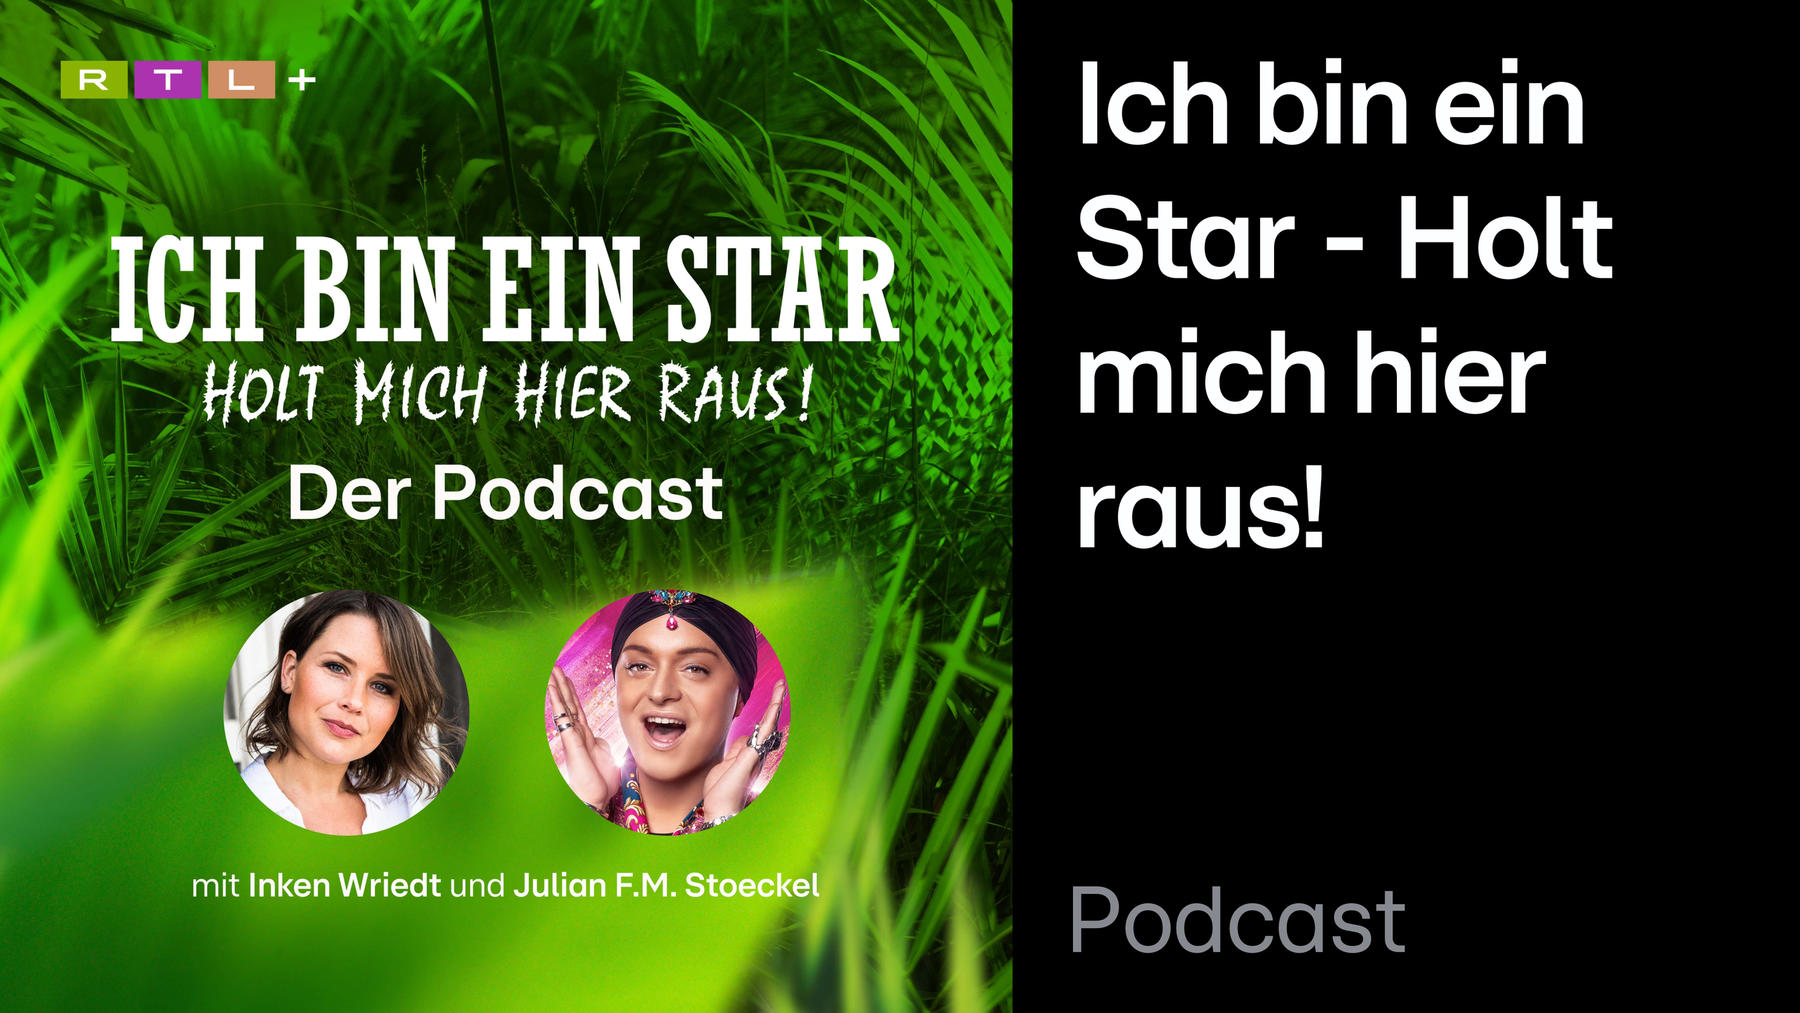 Podcast: Ich bin ein Star - Holt mich hier raus! - Der offizielle Podcast zum Dschungelcamp